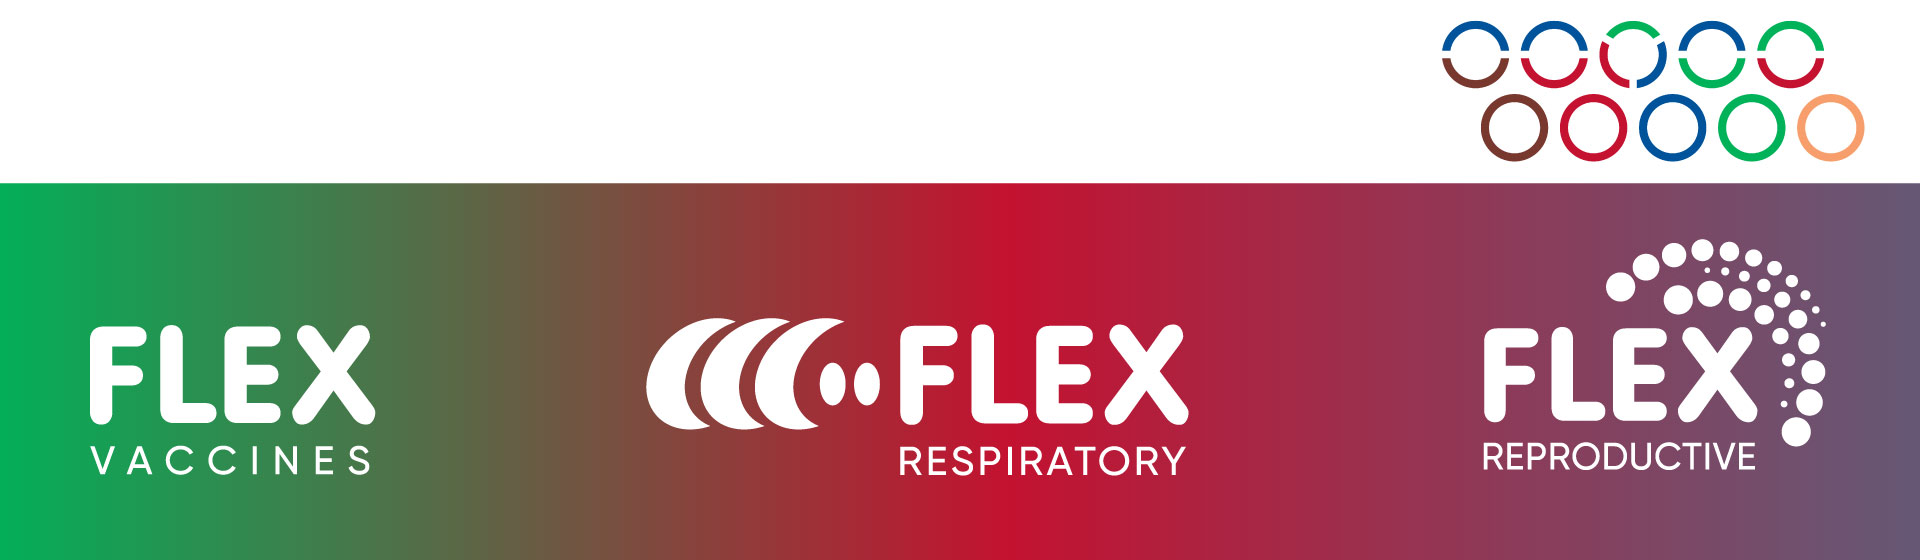 Flex Vaccines, Flex Respiratory, Flex Reproductive